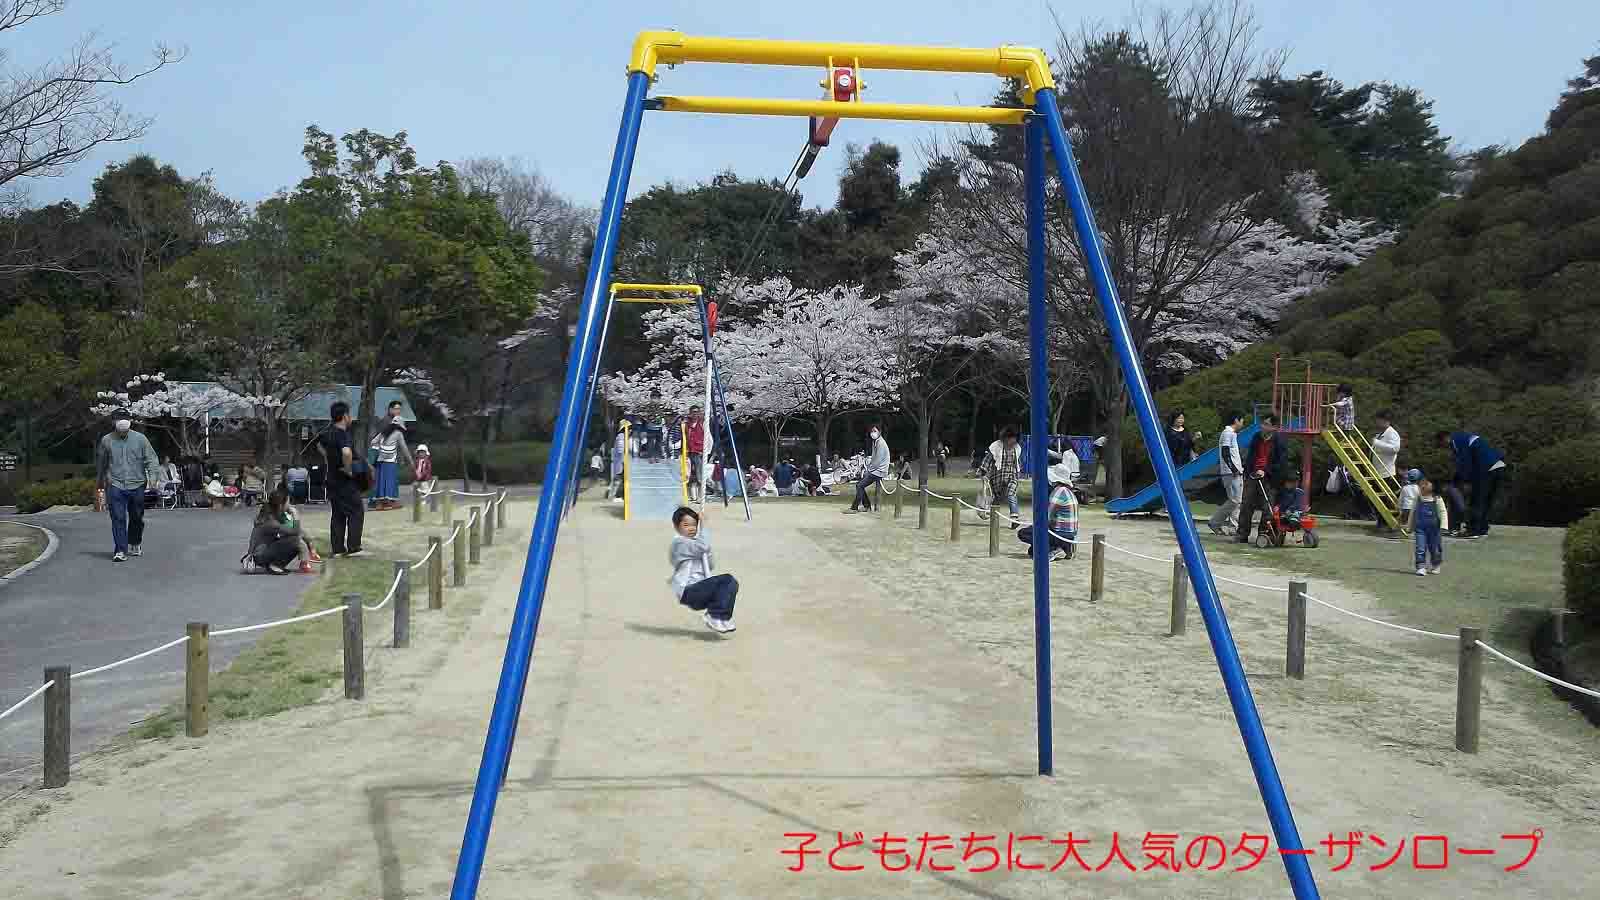 広島市森林公園 子連れのおでかけ 子どもの遊び場探しならコモリブ